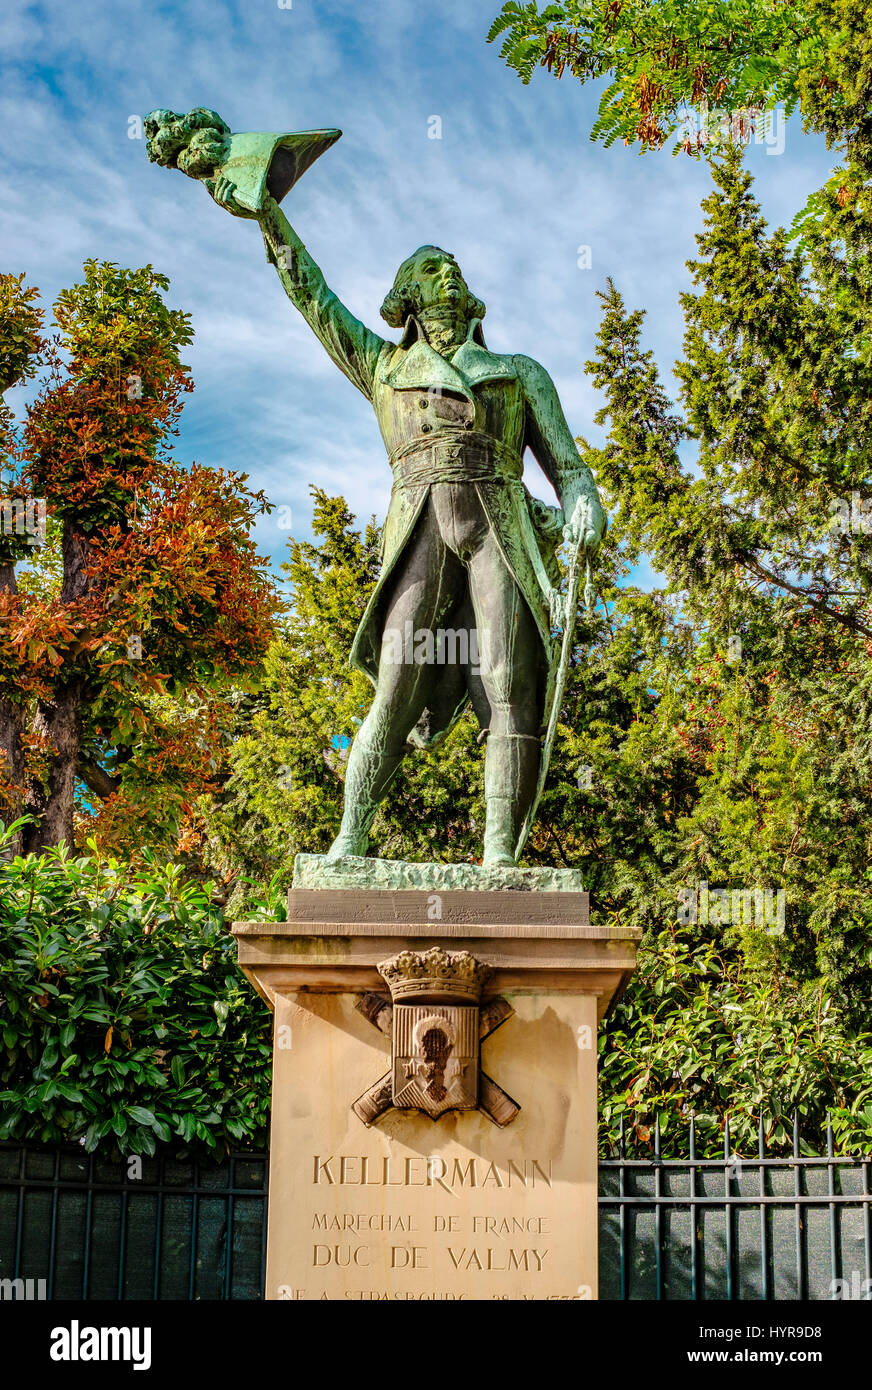 Statue du général Kellermann, Maréchal de France, duc de Valmy, place Broglie, Strasbourg, Alsace, France, Europe Banque D'Images